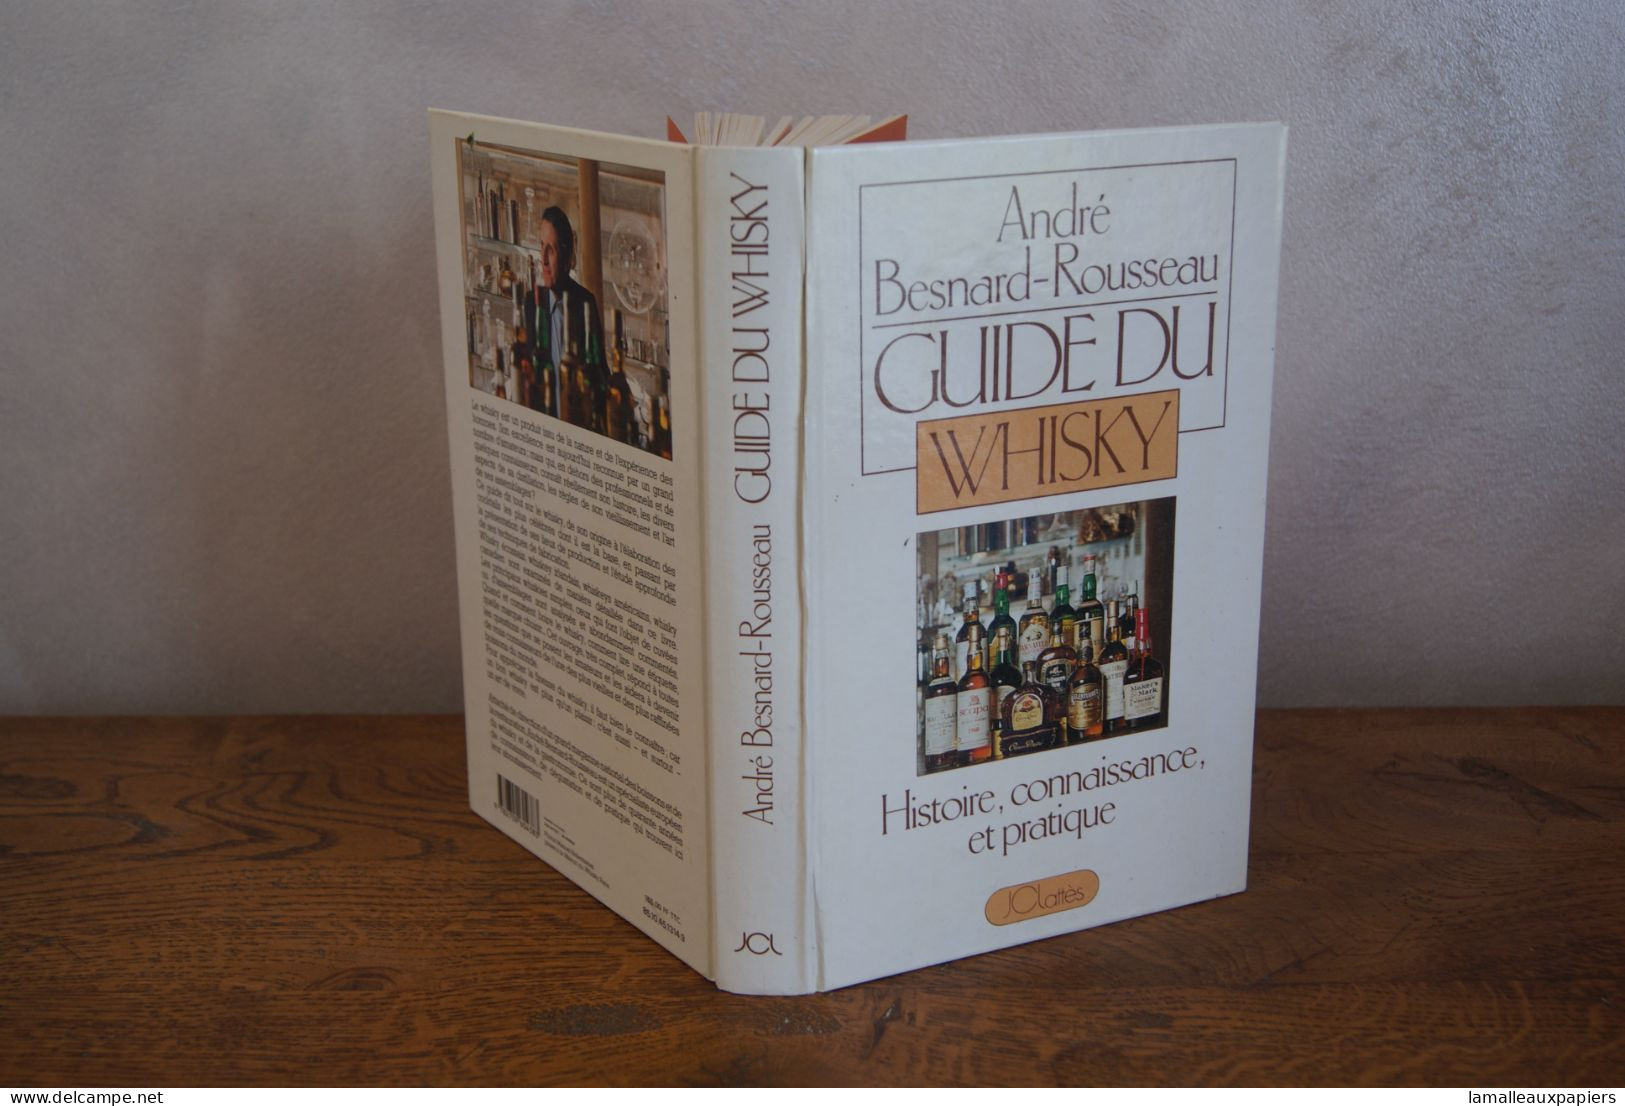 Guide Du Whisky (A.BESNARD ROUSSEAU) 1985 édition Jclattès - Gastronomie